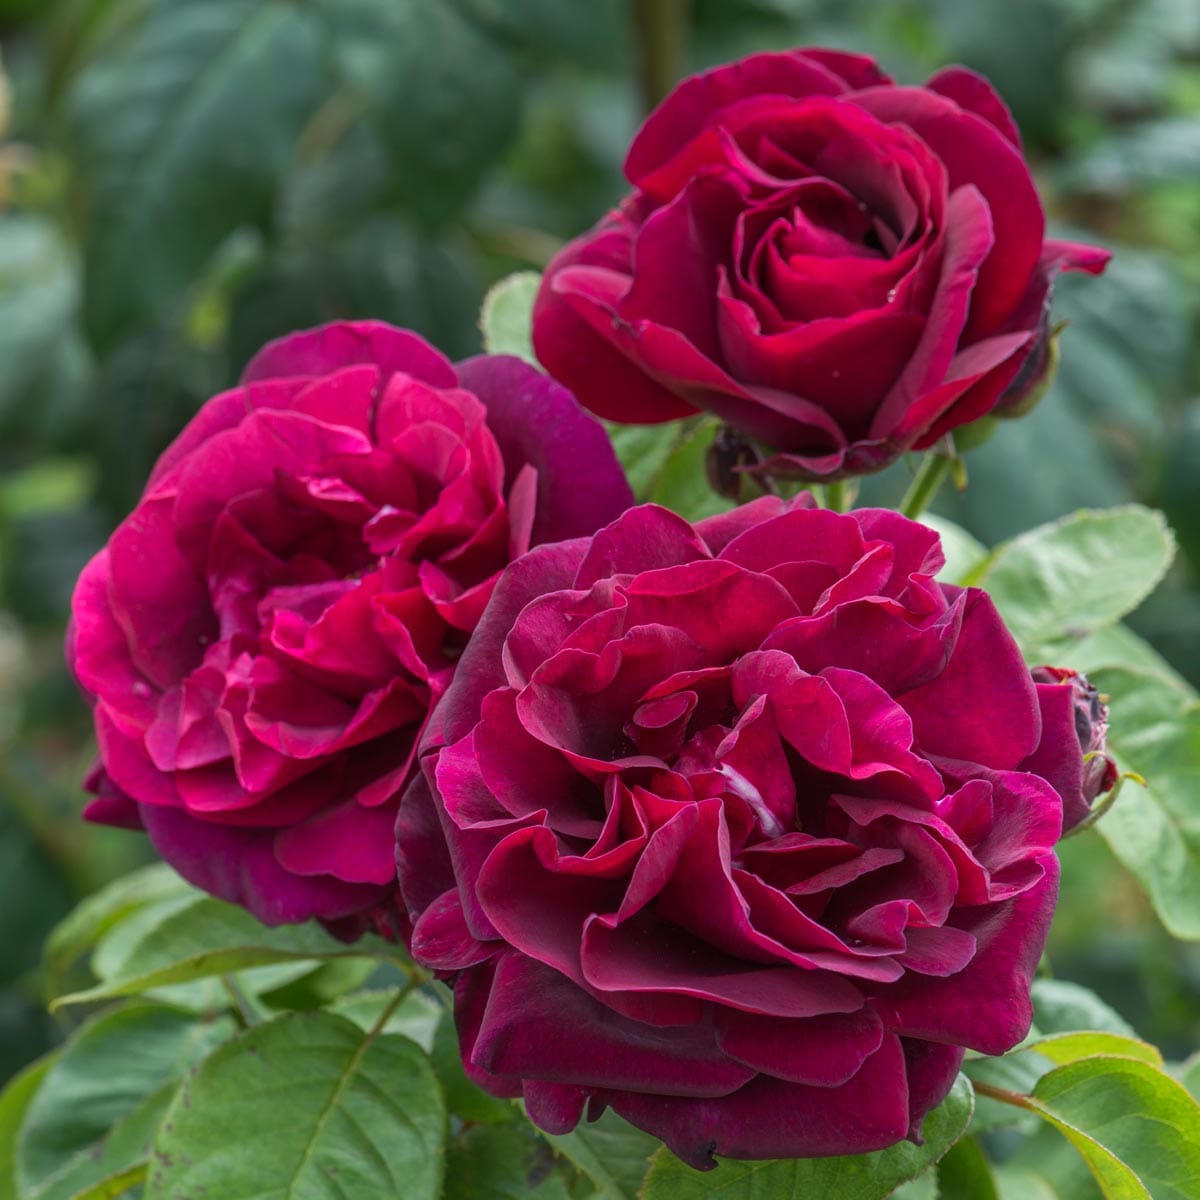 Rose du roi роз дю Руа